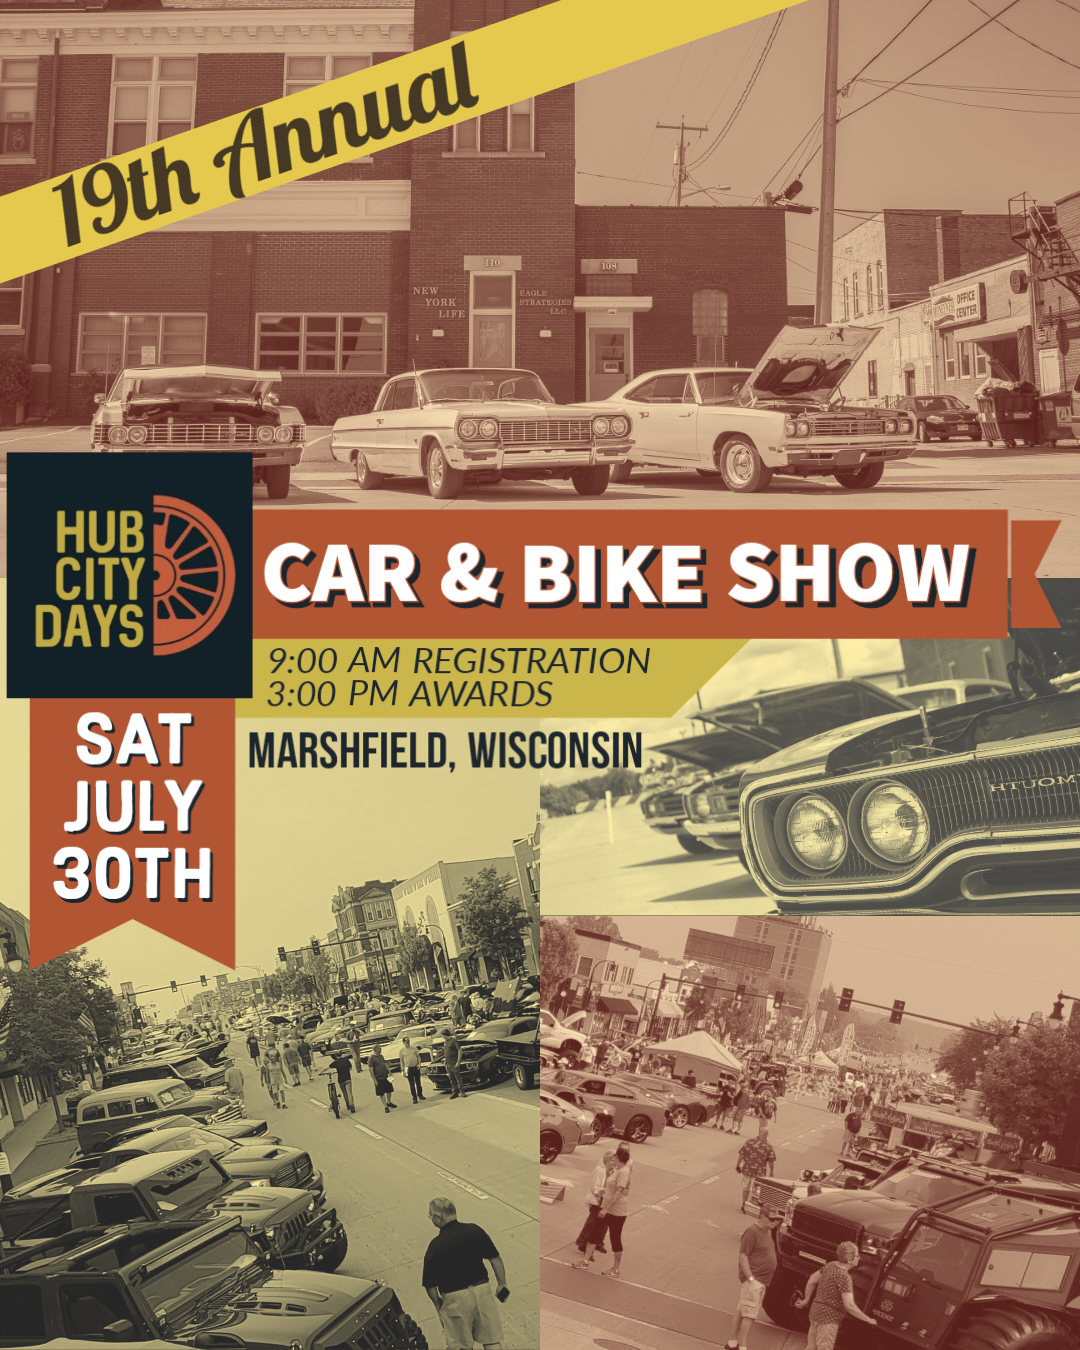 Hub City Days Car & Bike Show Car Show Radar